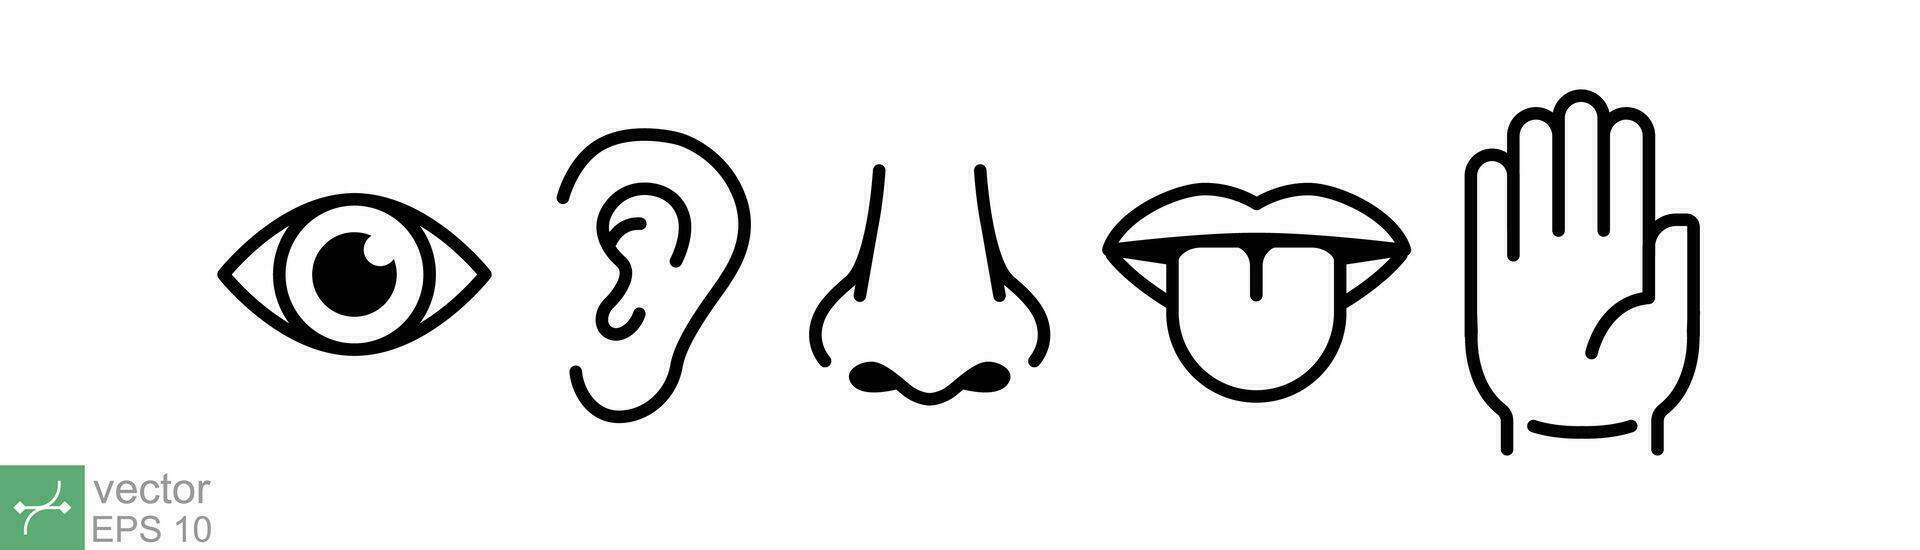 cinco sentidos do humano nervoso sistema símbolo. simples linha, esboço estilo. olho, ver, orelha, nariz, cheiro, boca, língua, gosto, sensorial órgão. vetor ilustração isolado em branco fundo. eps 10.